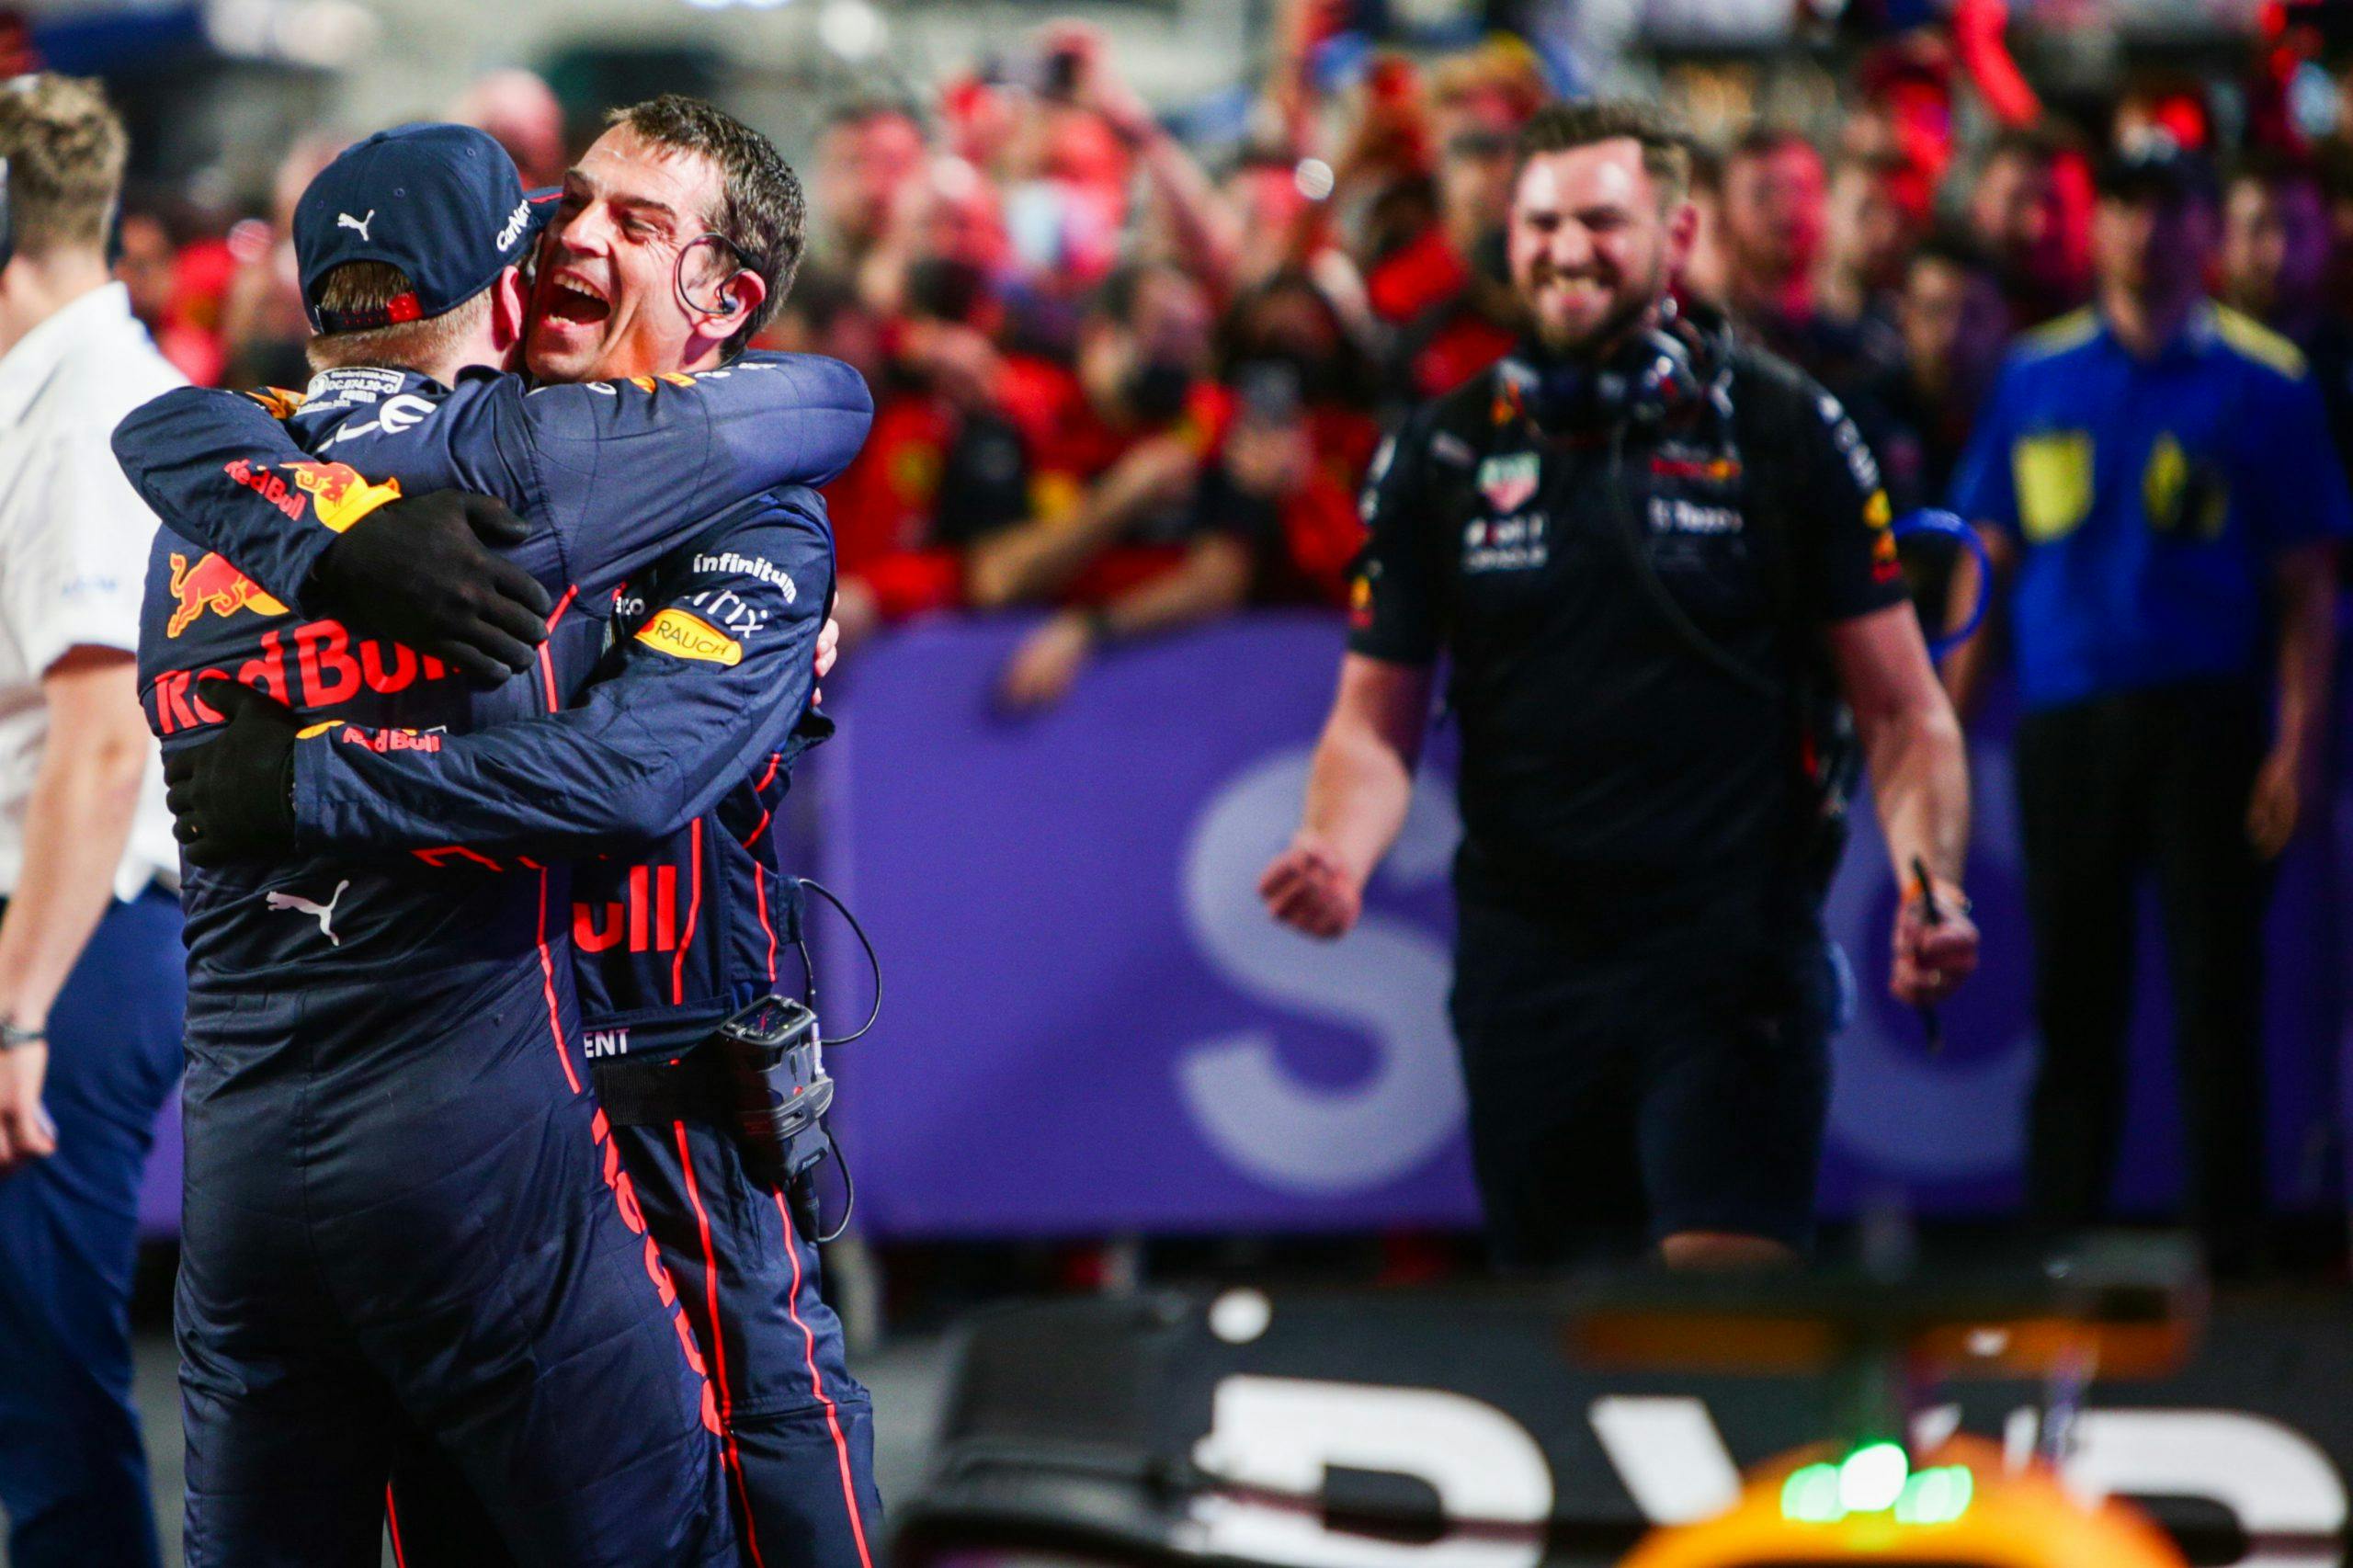 Max Verstappen of Red Bull Racing wins Saudi Arabia GP